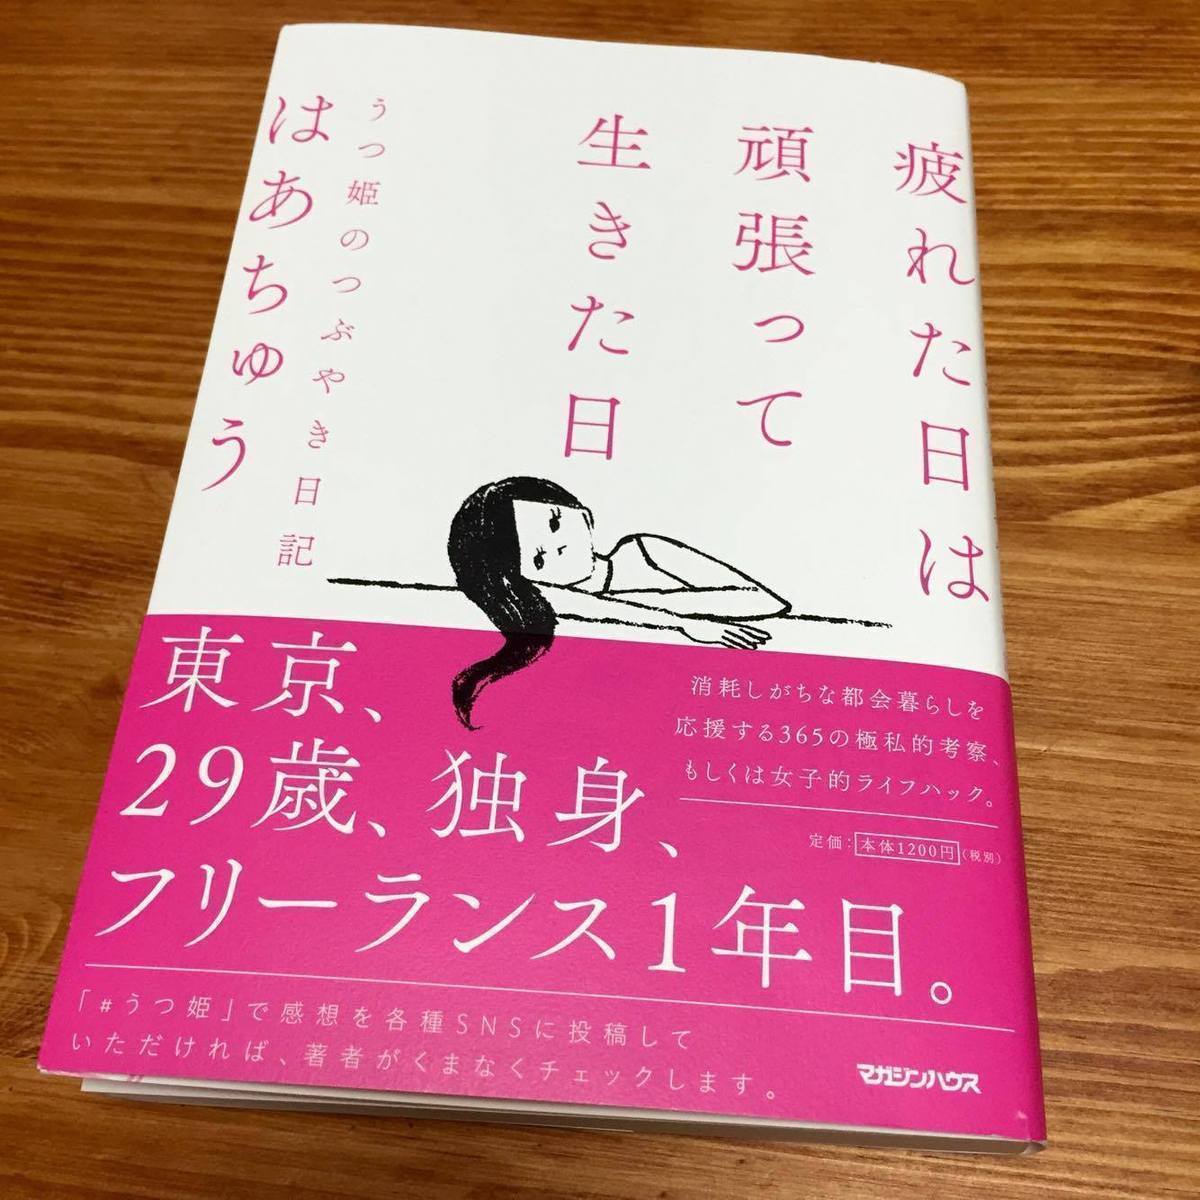 東京で生きるのが疲れた日に読みたい「はあちゅう」本